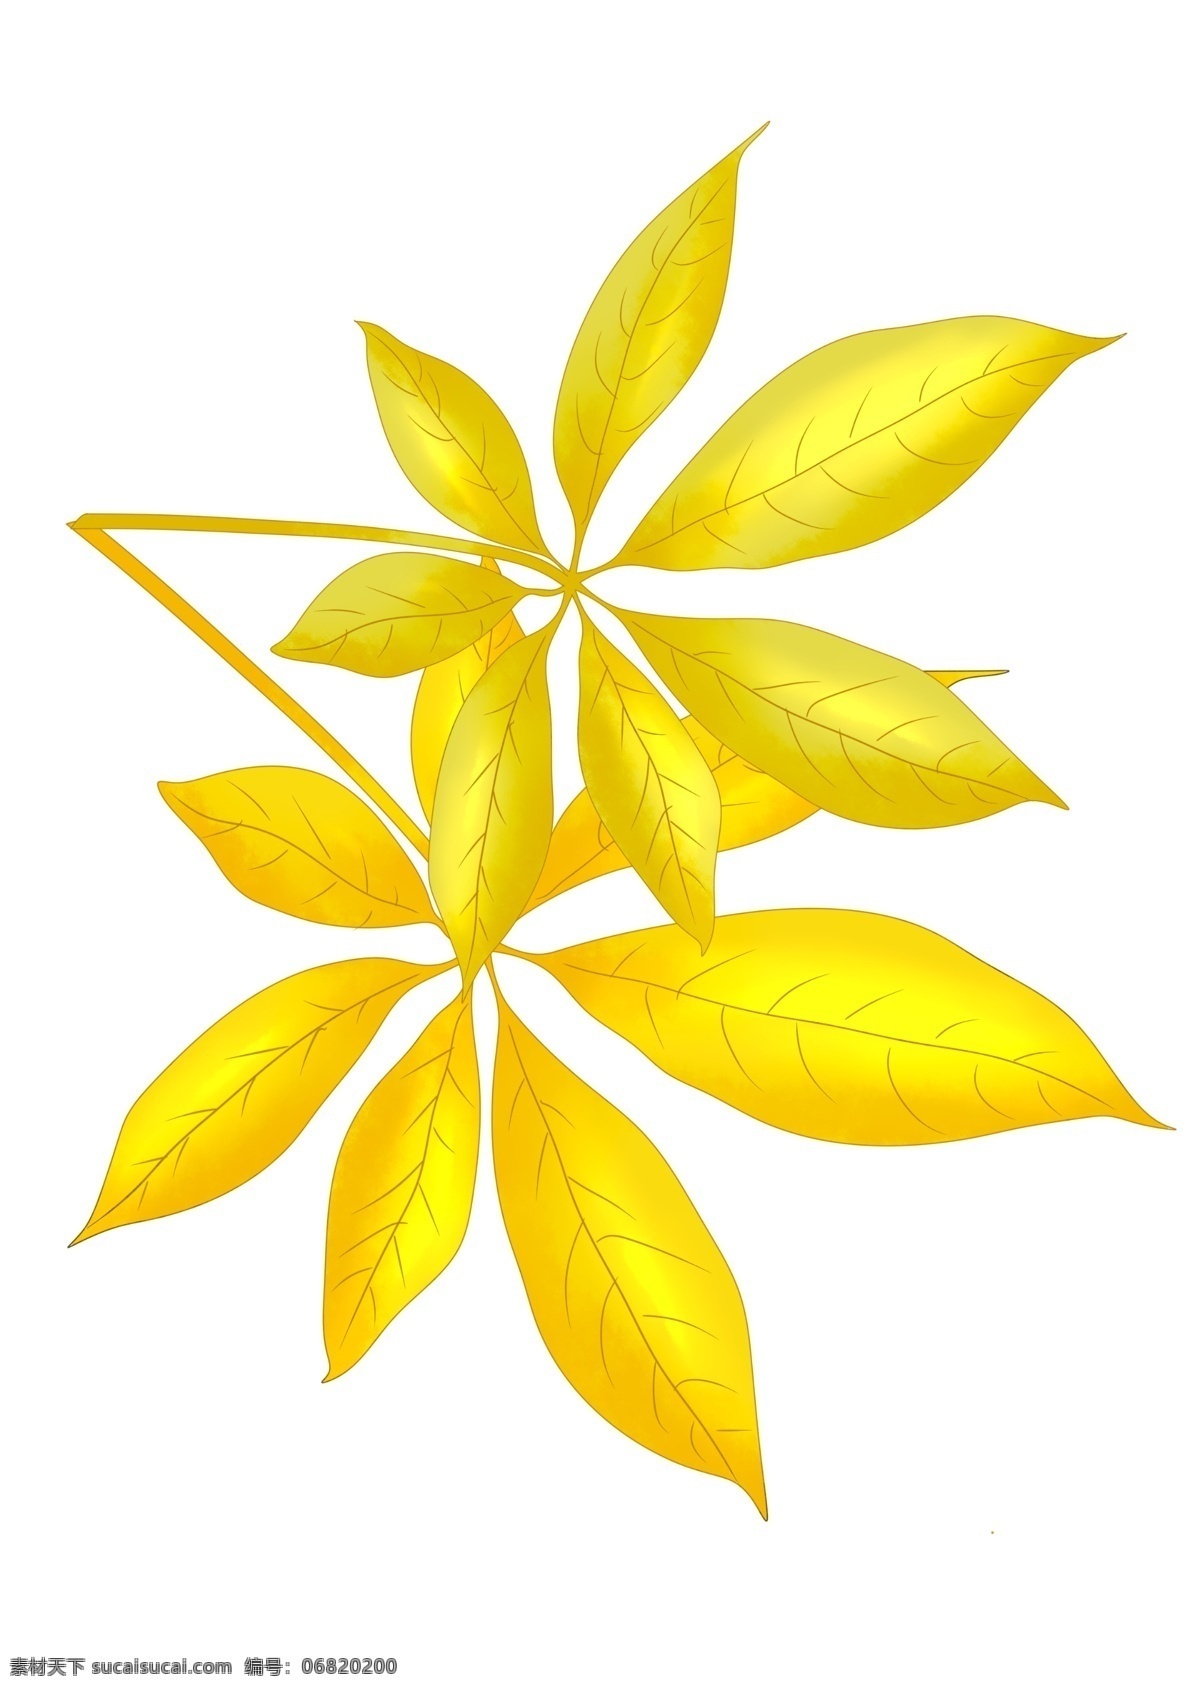 两 片 金黄色 叶子 插画 两片叶子 金黄色的叶子 树叶插画 植物叶子 树木叶子 秋冬季 落叶 黄叶